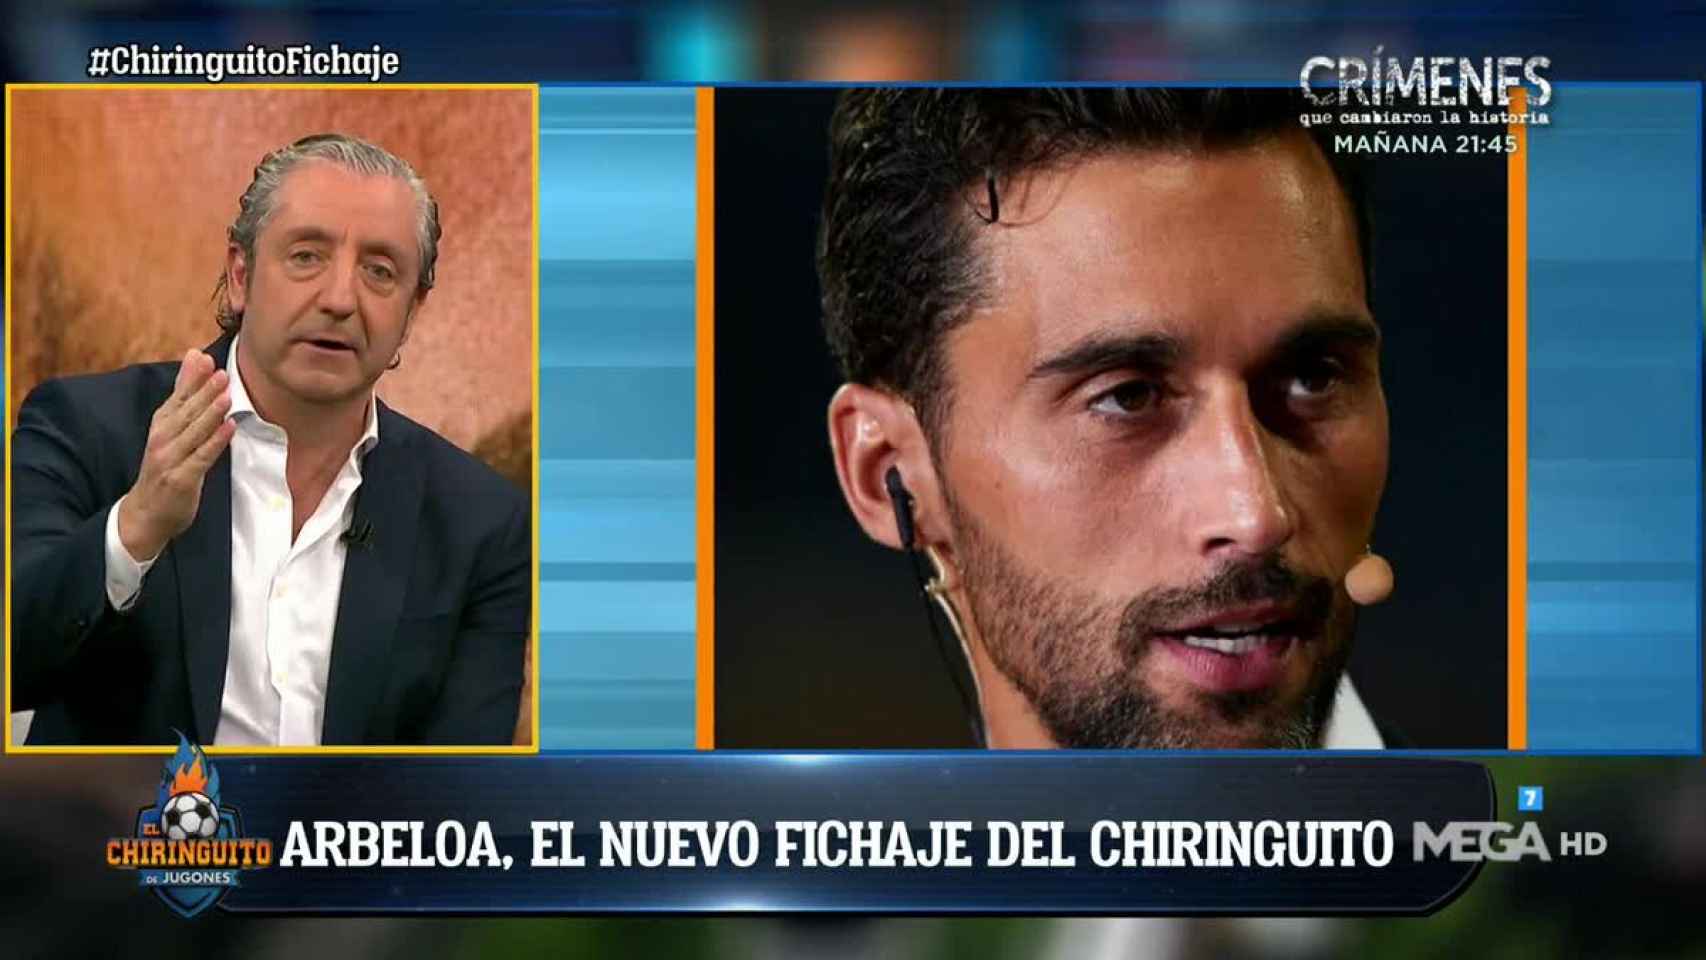 Arbeloa ficha por El Chiringuito y se incorpora al equipo de Pedrerol. Foto: Twitter (@elchiringuitotv)